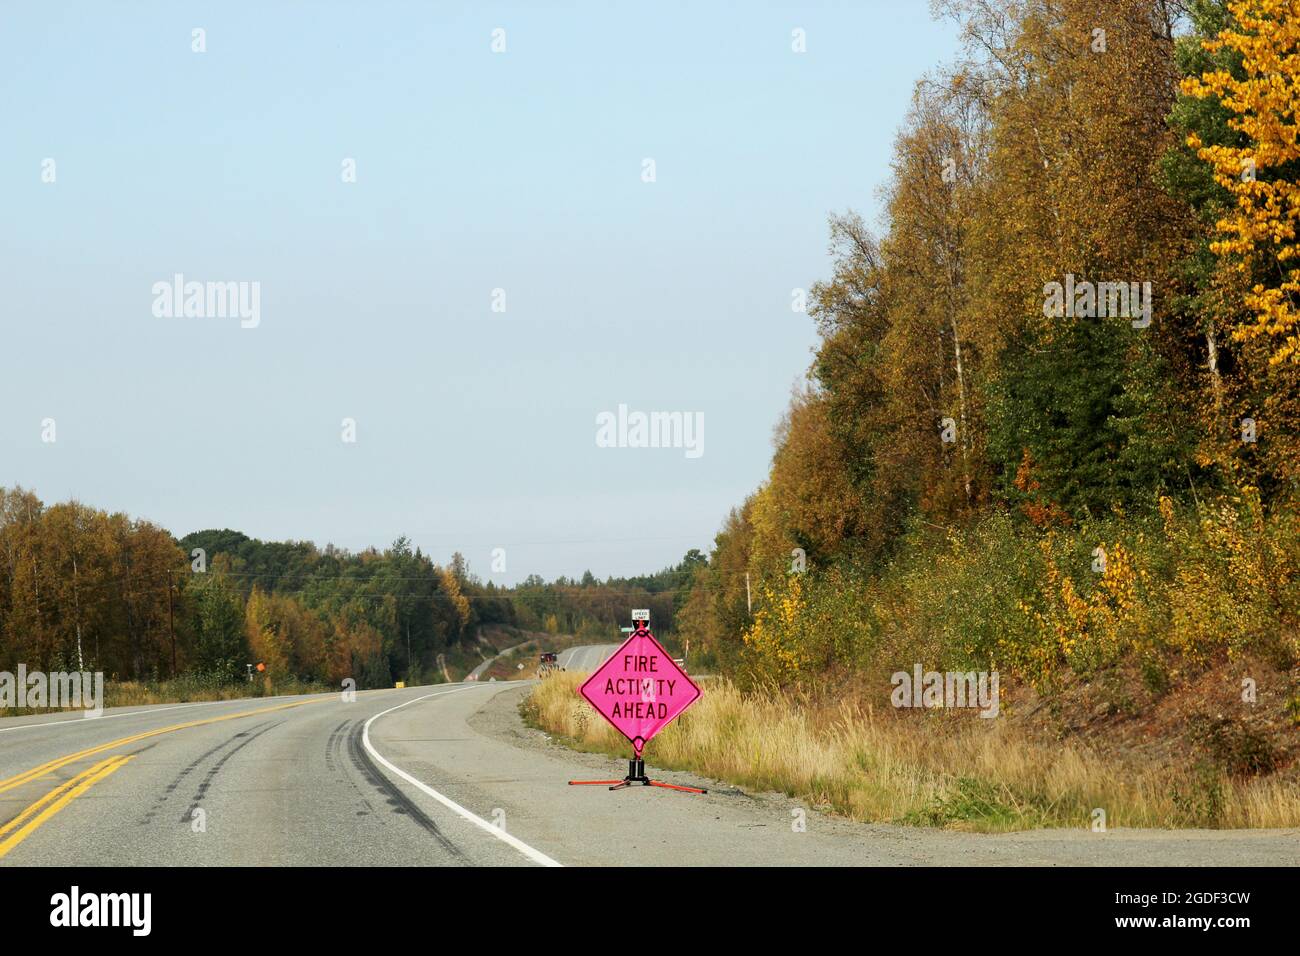 Ammerikanisches Verkehrszeichen mit der Aufschrift 'Fire acitivity Ahead' in leuchtendem Pink am Straßenrand auf einer Hauptverkehrsstraße Alaska, USA. Banque D'Images